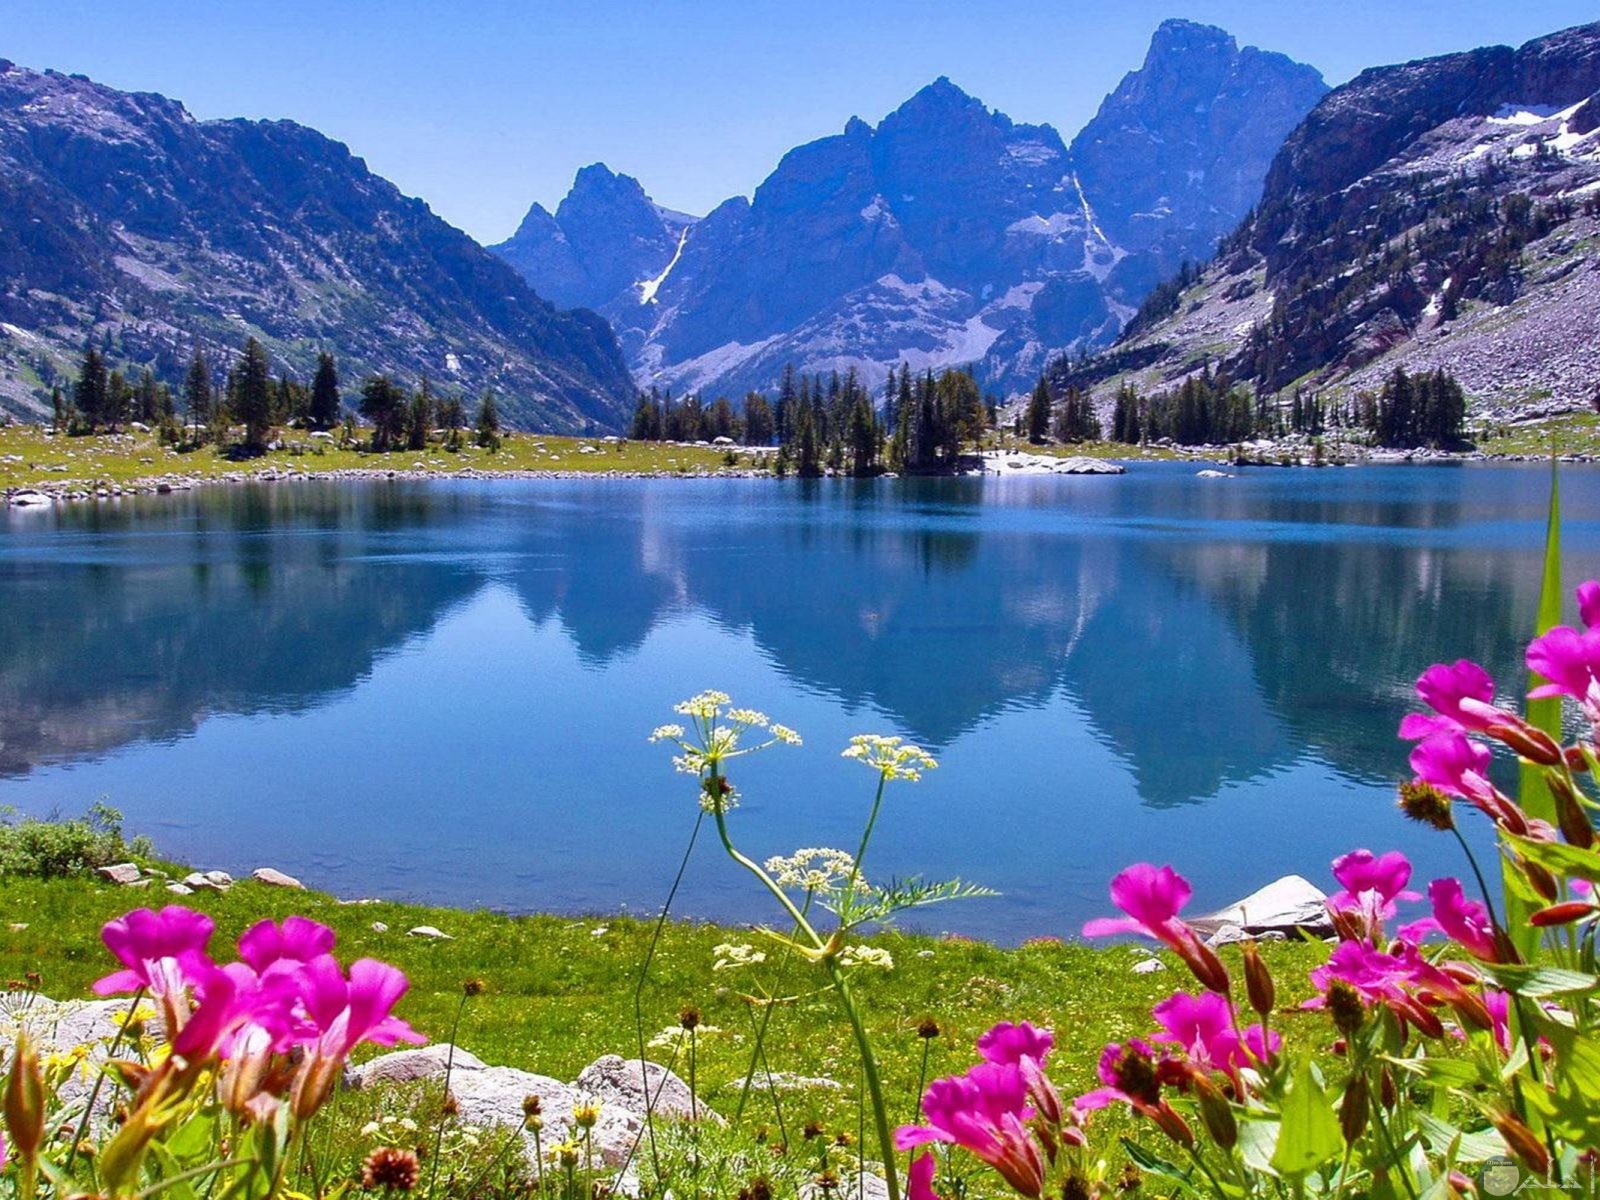 منظر طبيعي جميل للجبال و النهر و الزهور